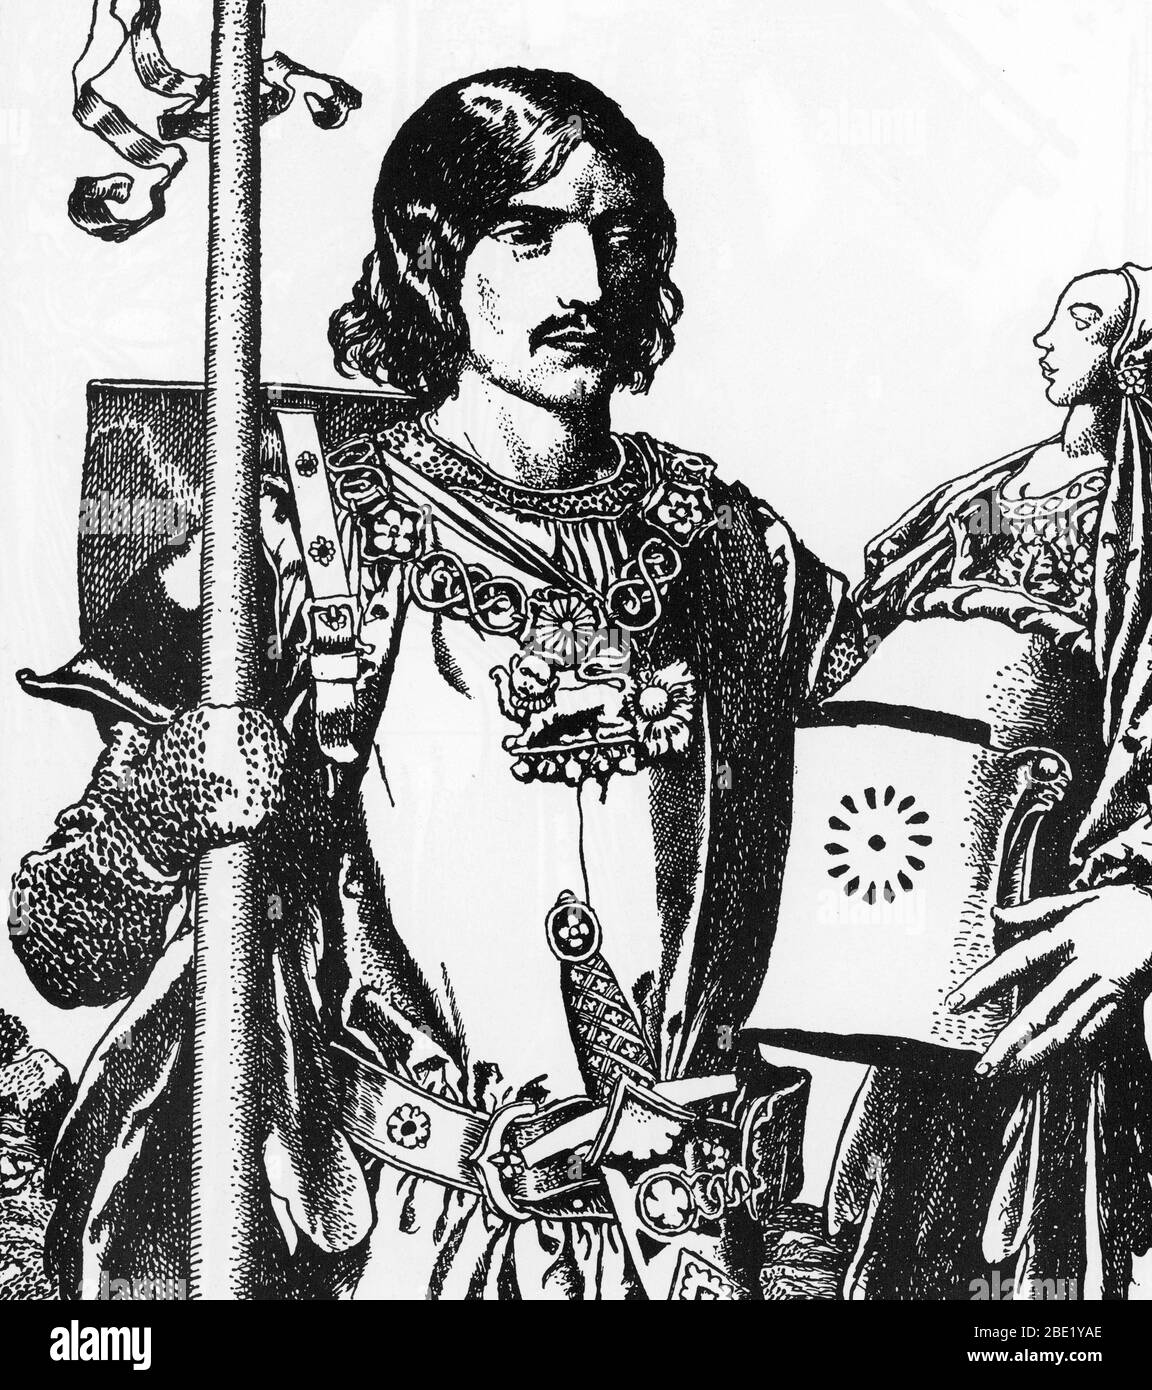 'Legende arthurienne : Portrait de Lancelot du Lac, le chevalier blanc' (Portrait de Lancelot (Launcelot) le chevalier blanc) Illustration d'Howard Pyle Banque D'Images